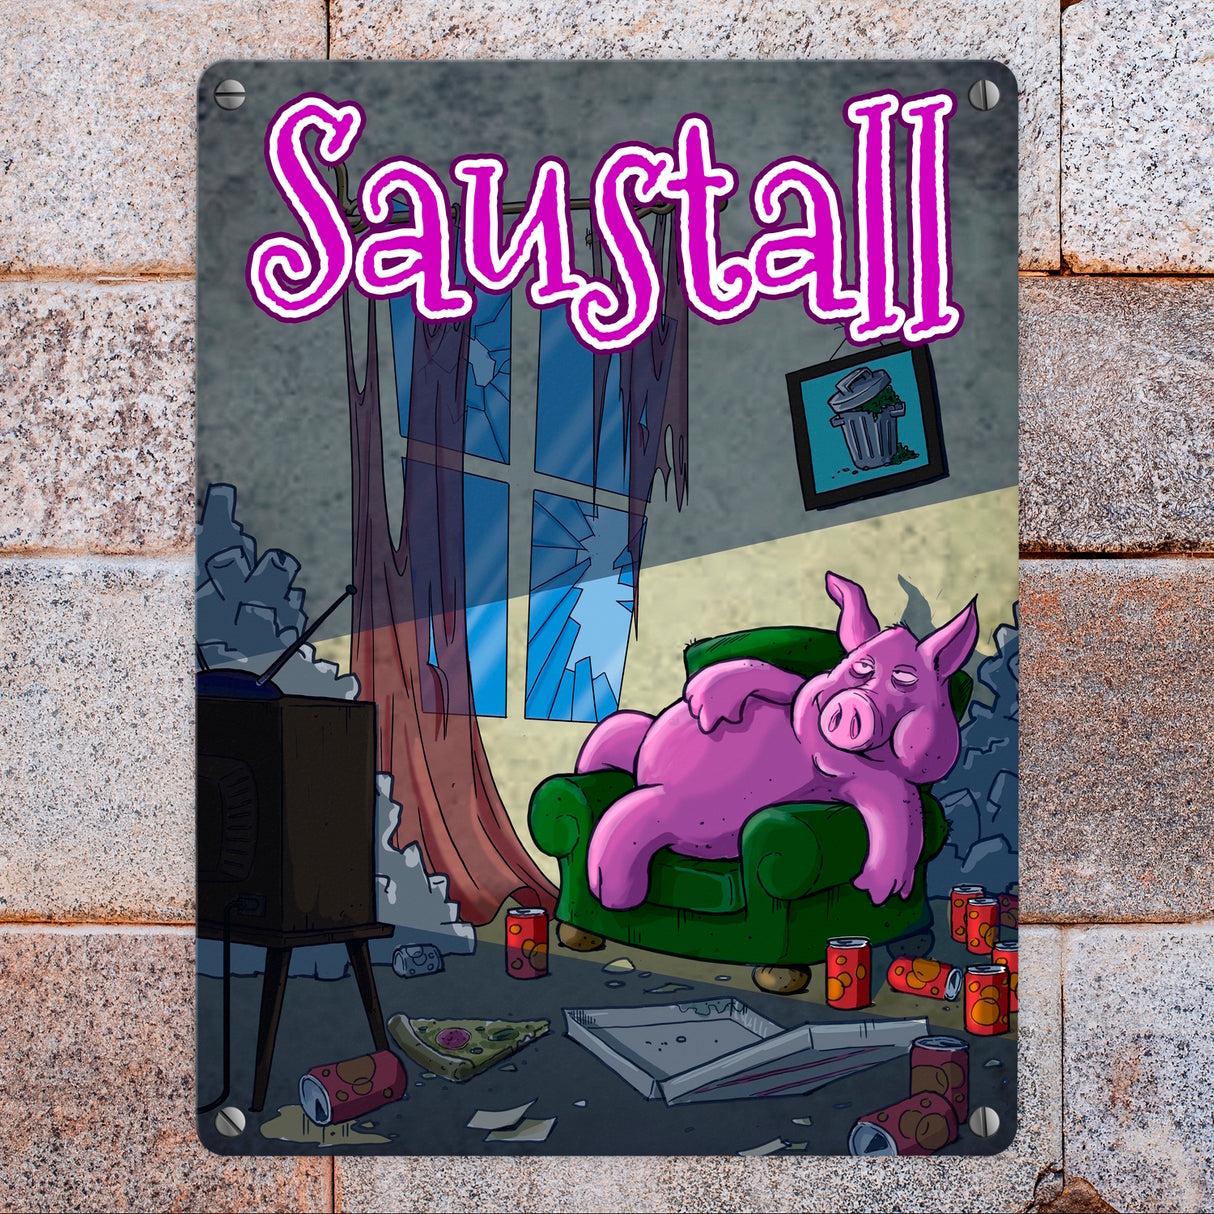 Metallschild mit Motiv - Saustall und Motiv: dickes Schwein liegt auf Couch